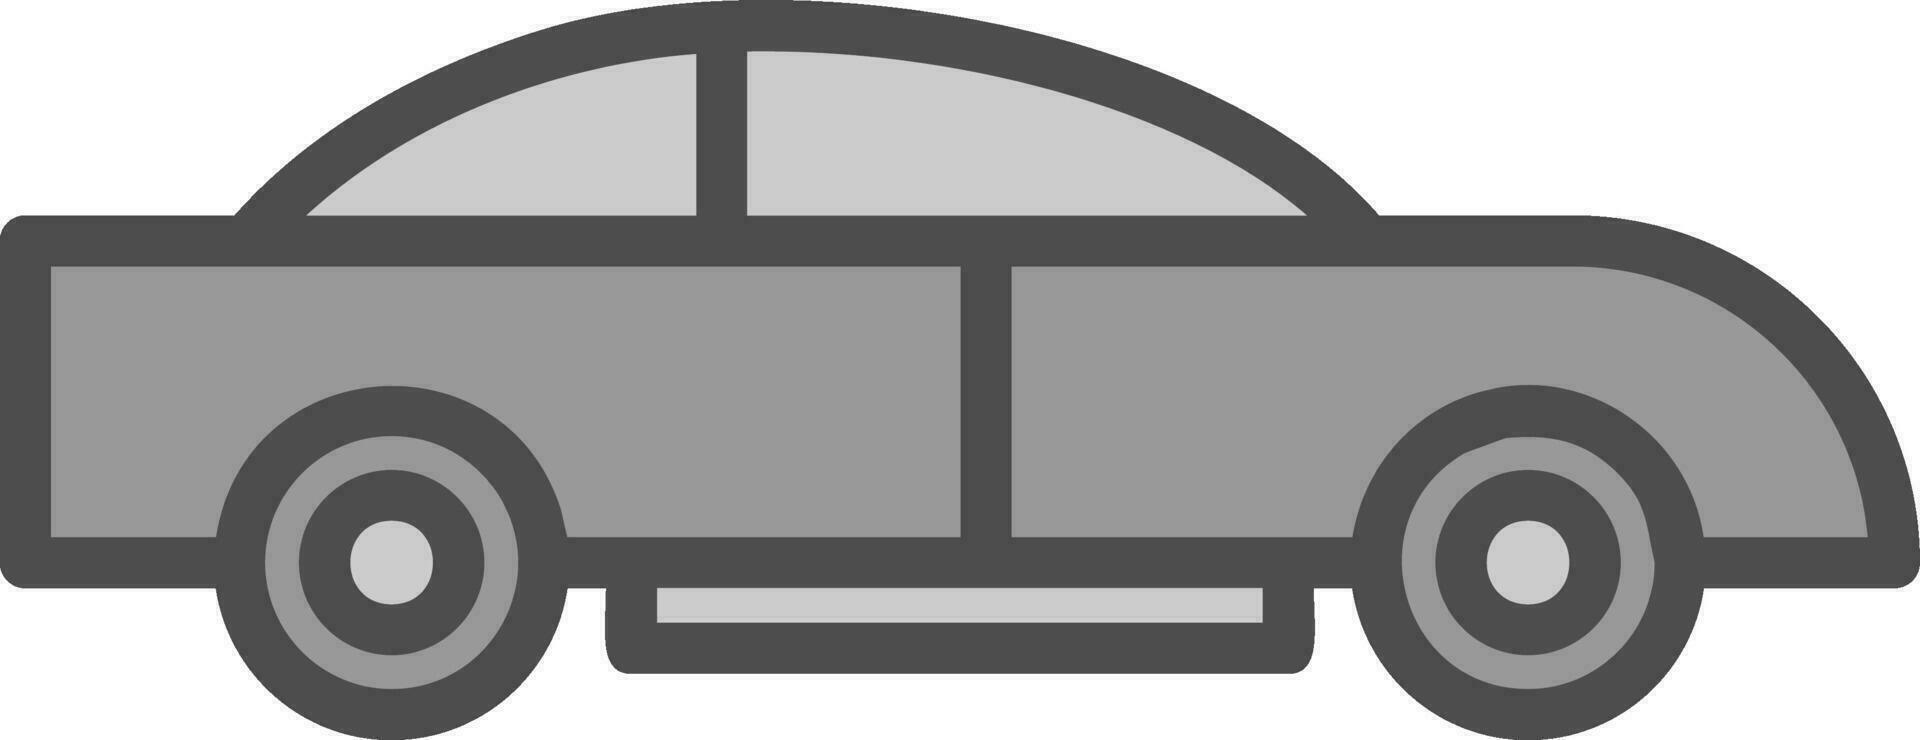 Car Vector Icon Design